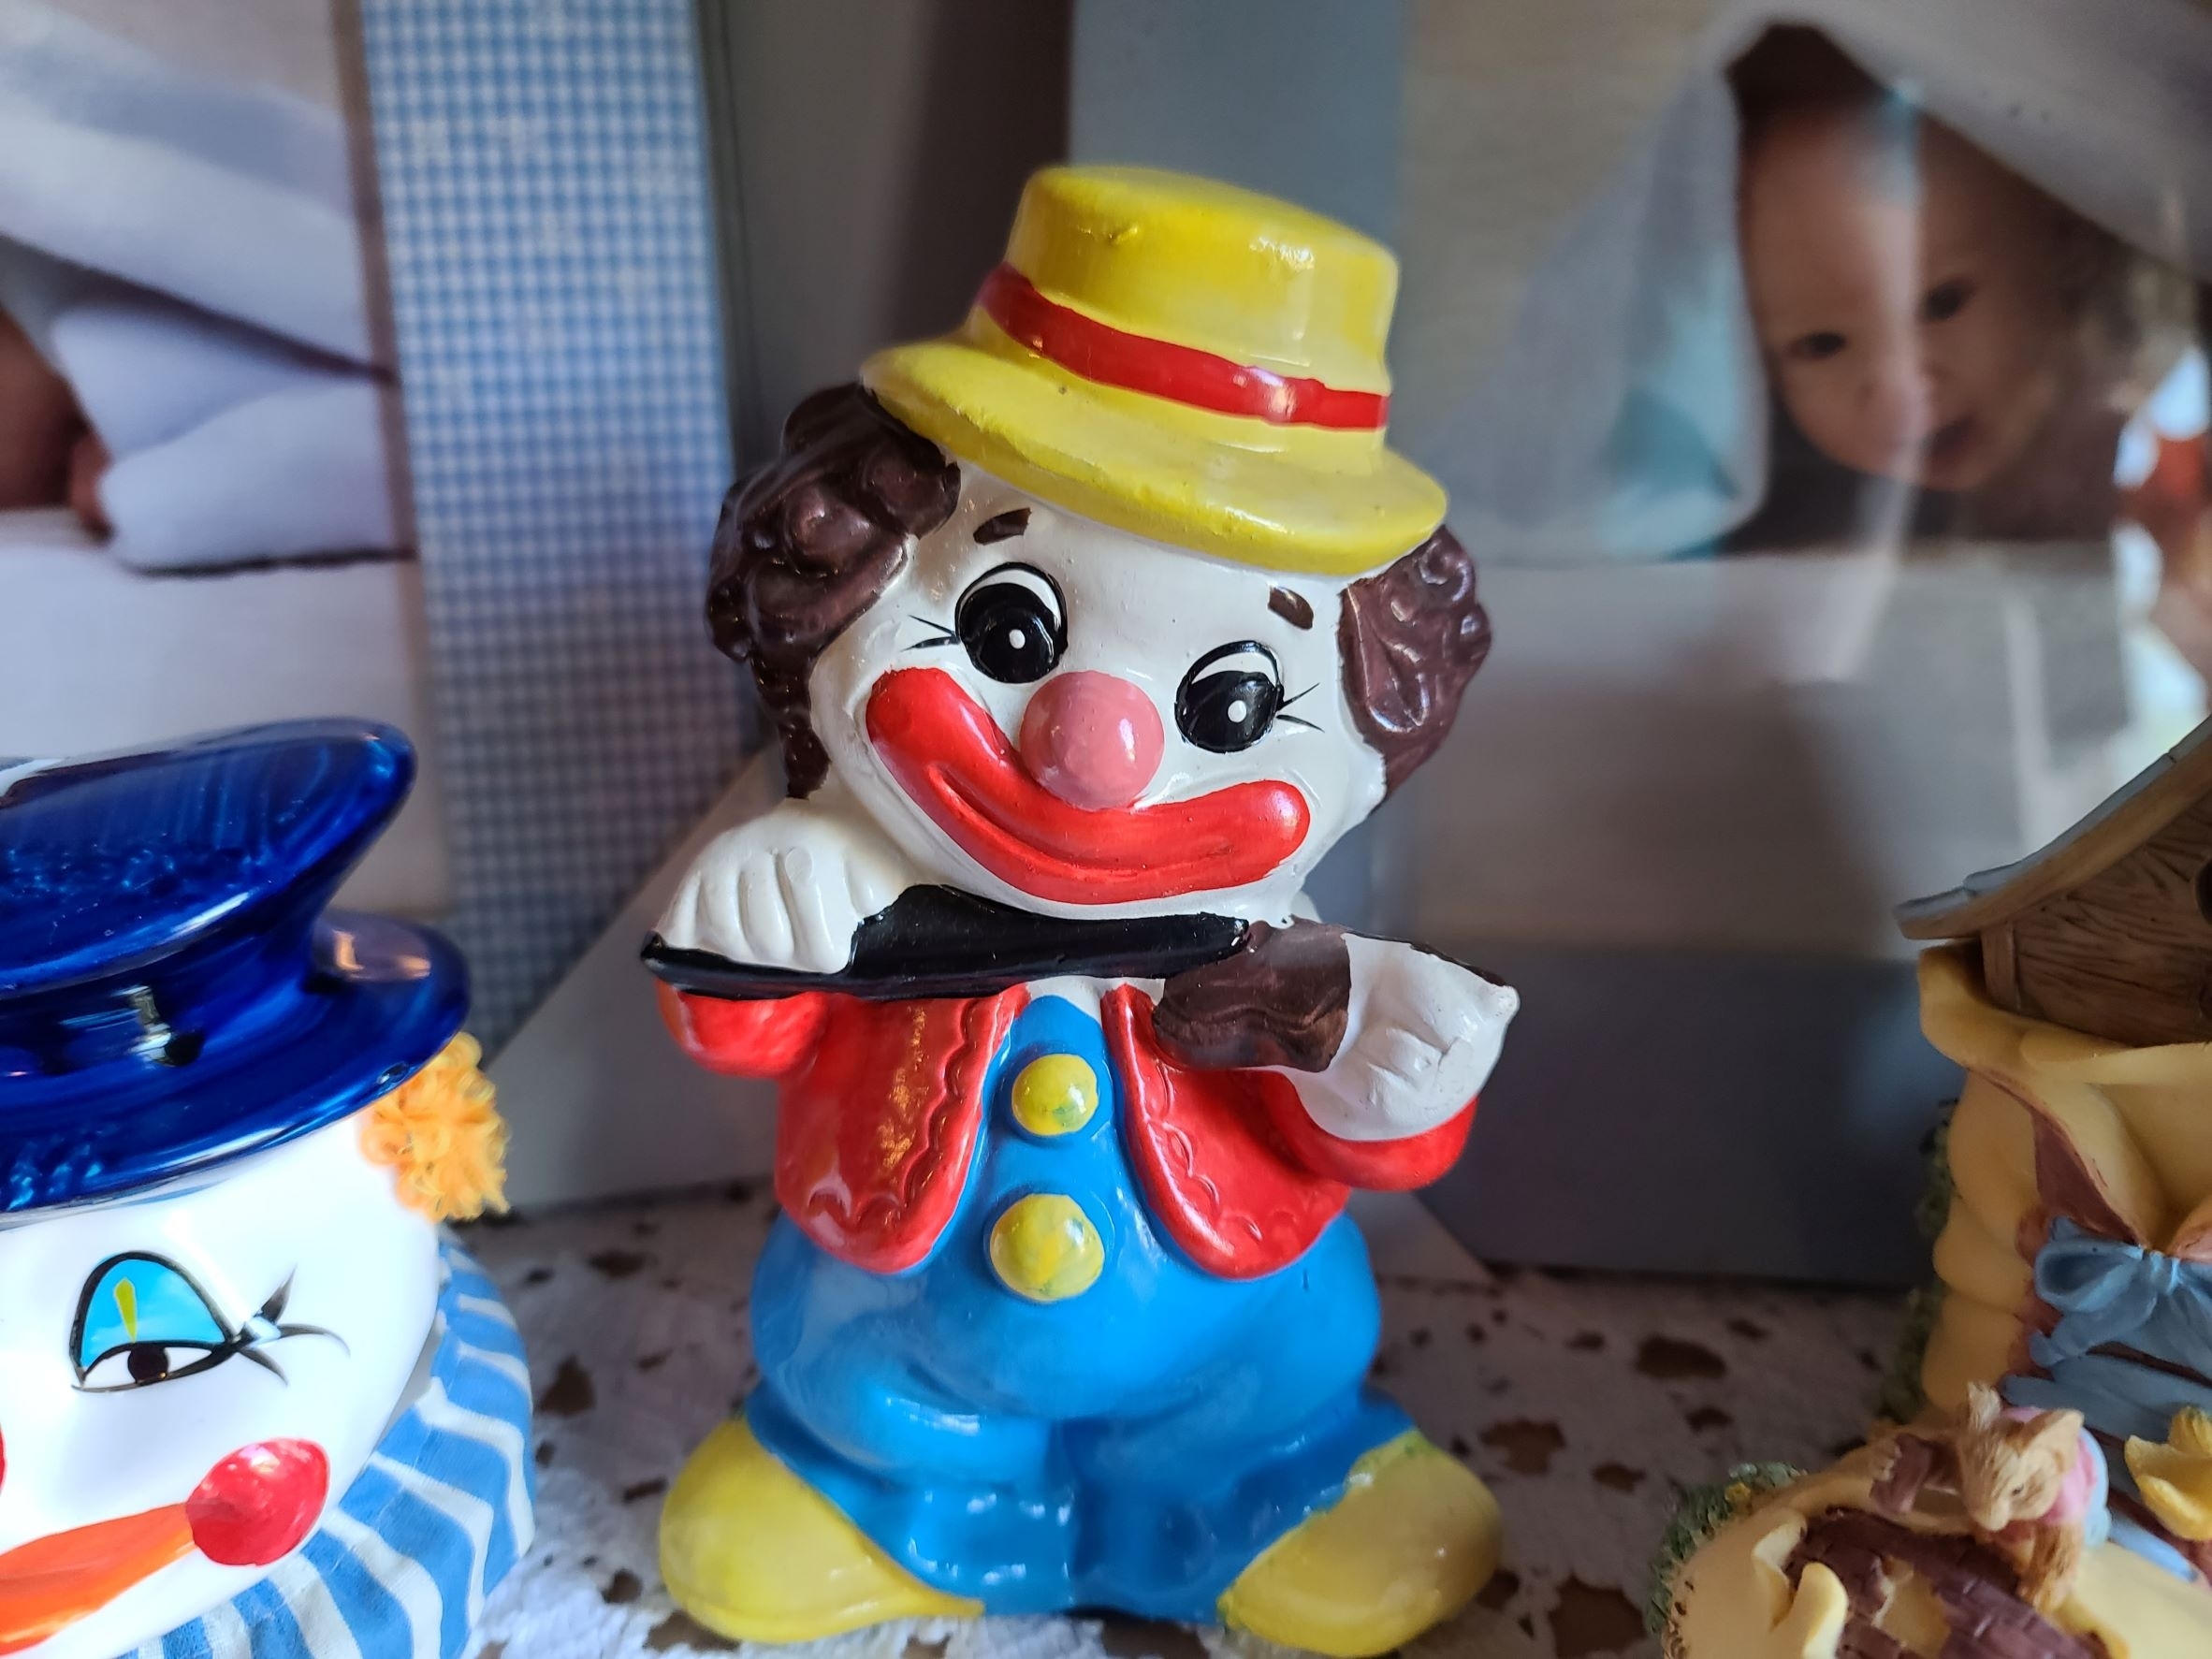 A clown figure | Source: Shutterstock